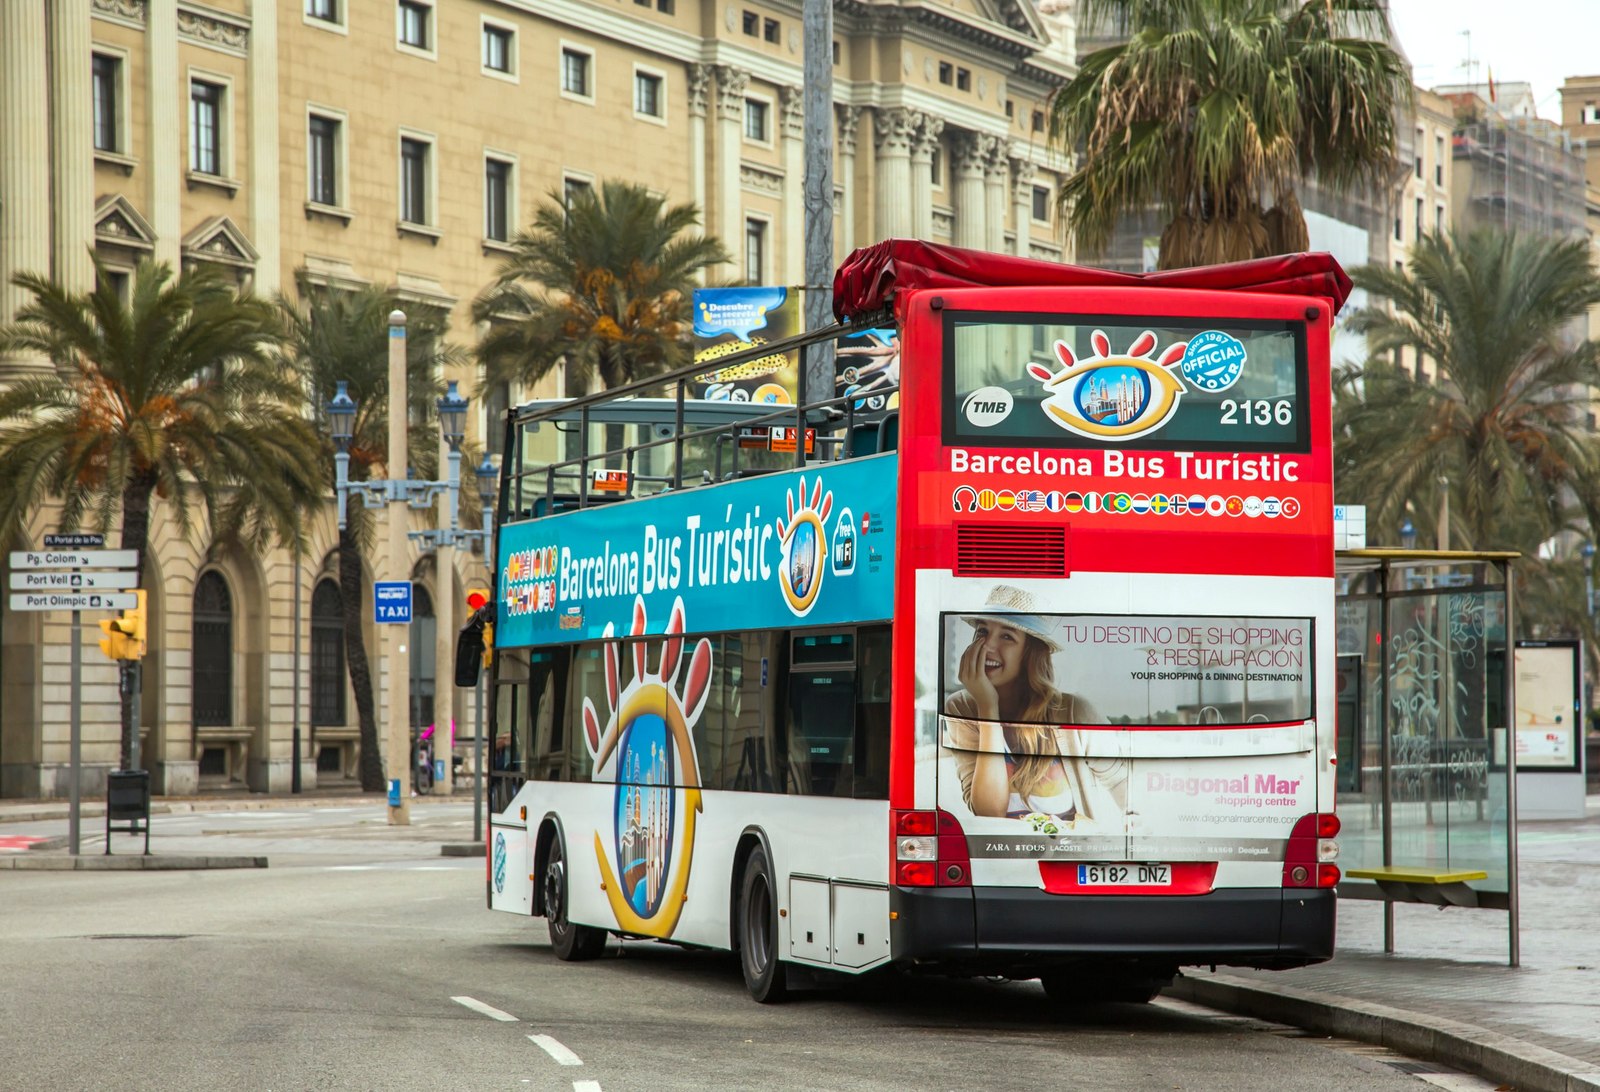 Противники массового туризма в Барселоне напали на туристический автобус